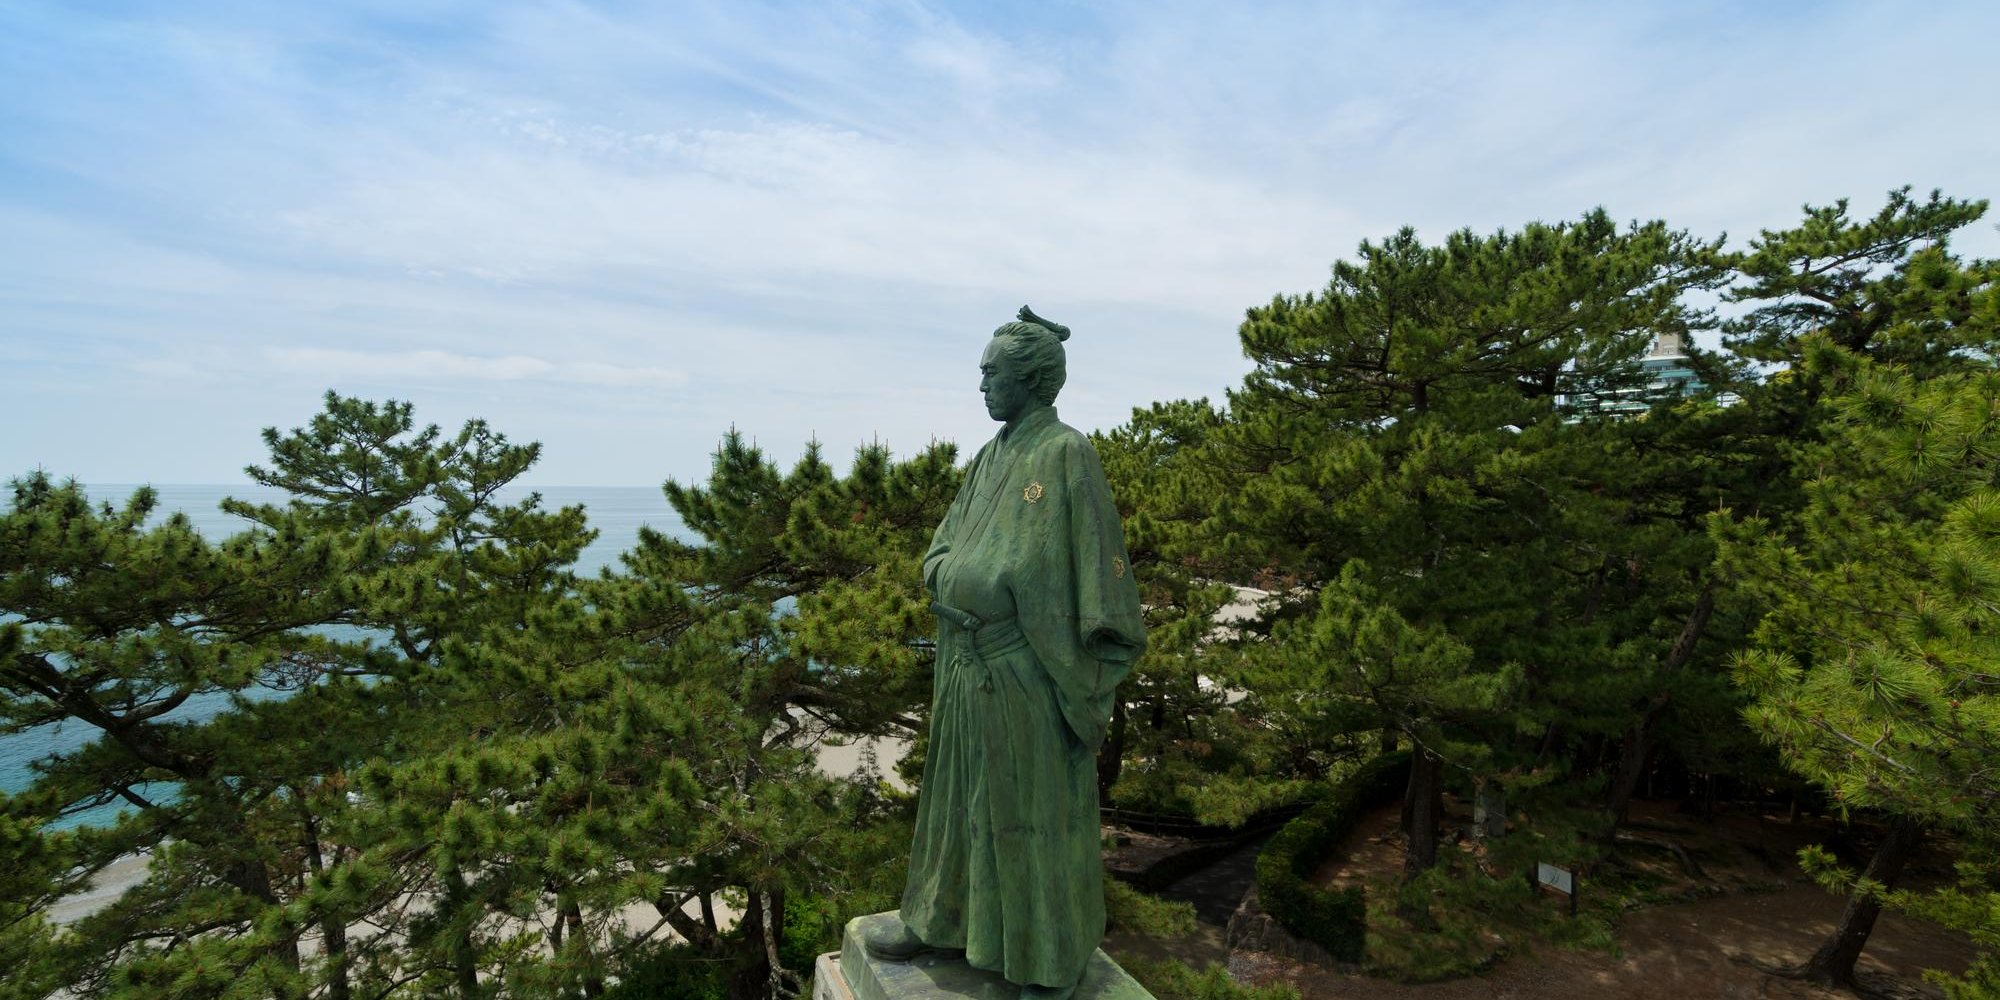 ซะคะโมโตะ เรียวมะ ผู้สร้างความเปลี่ยนแปลงในช่วงปลายสมัยโชกุนโทกุงาวะ วีรบุรุษแห่งประวัติศาสตร์ญี่ปุ่น